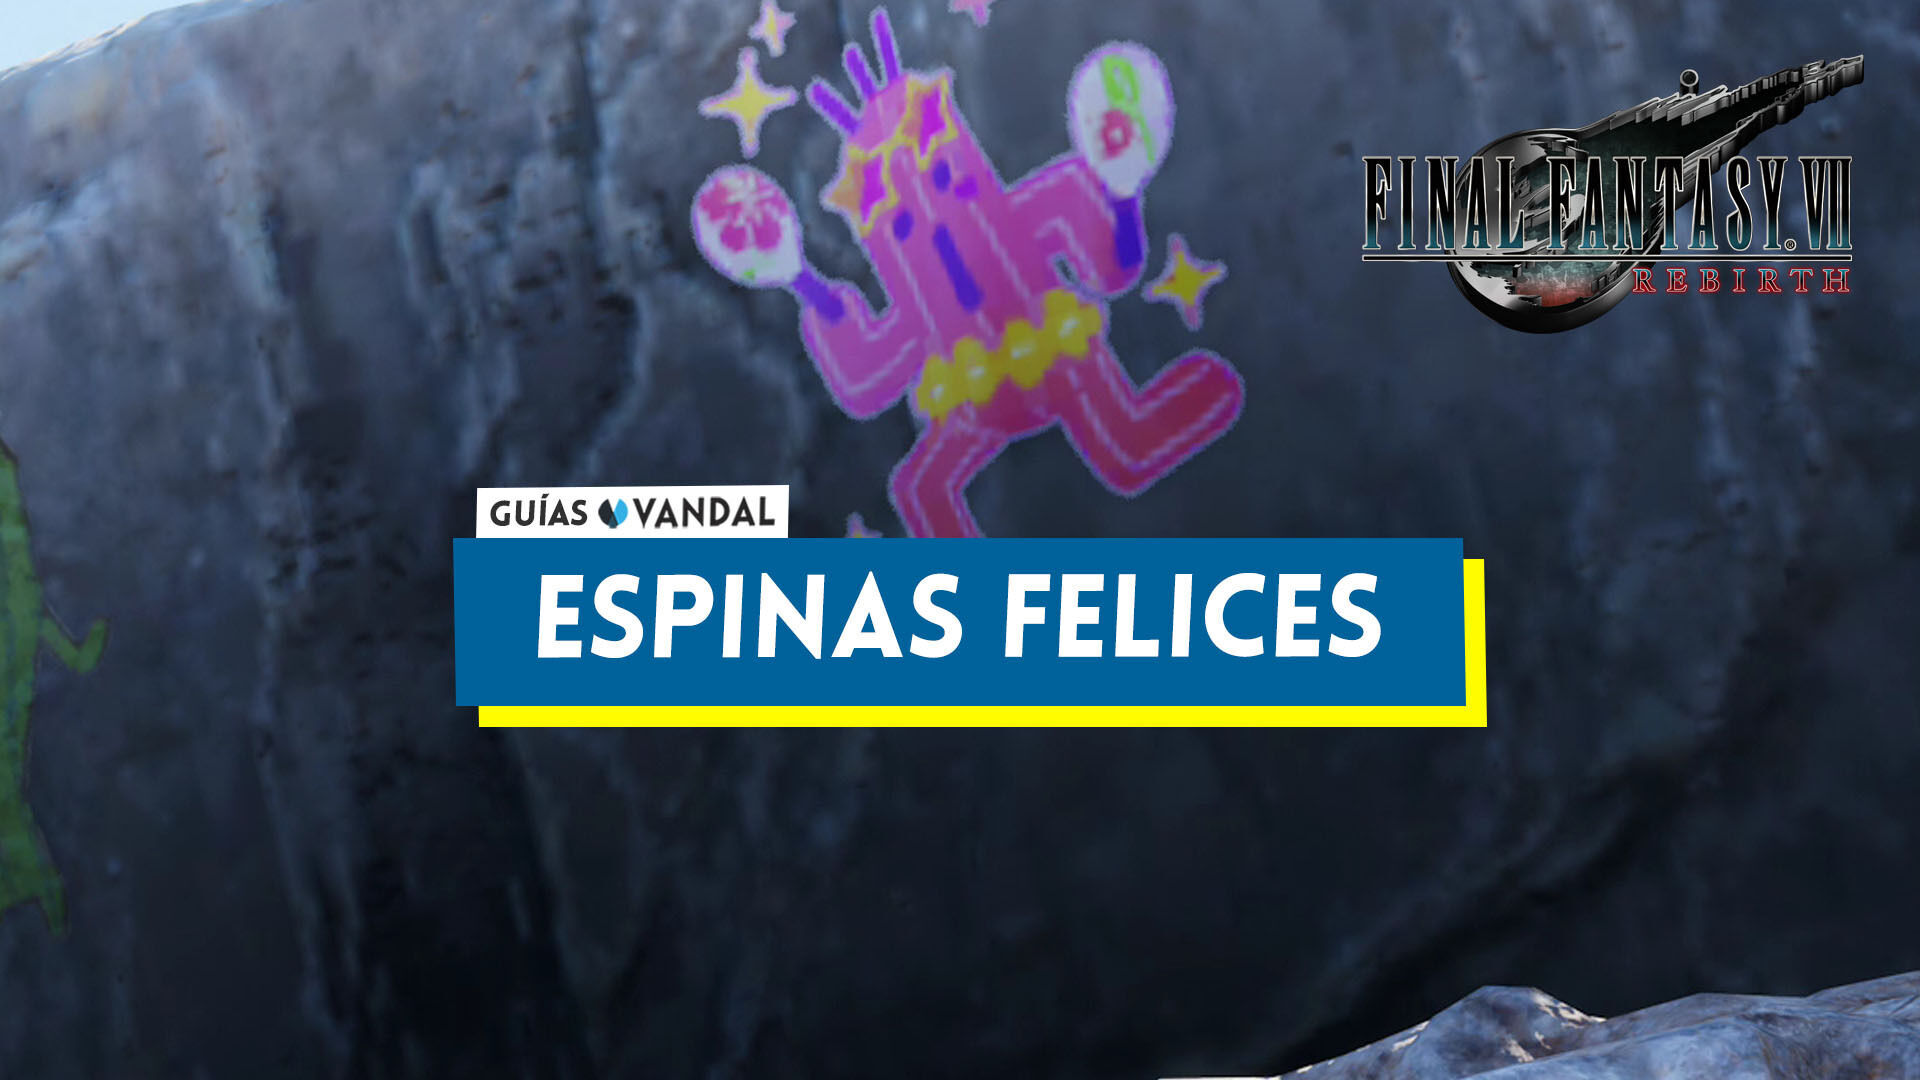 Espinas felices: cómo ganar y recompensas en Final Fantasy VII Rebirth